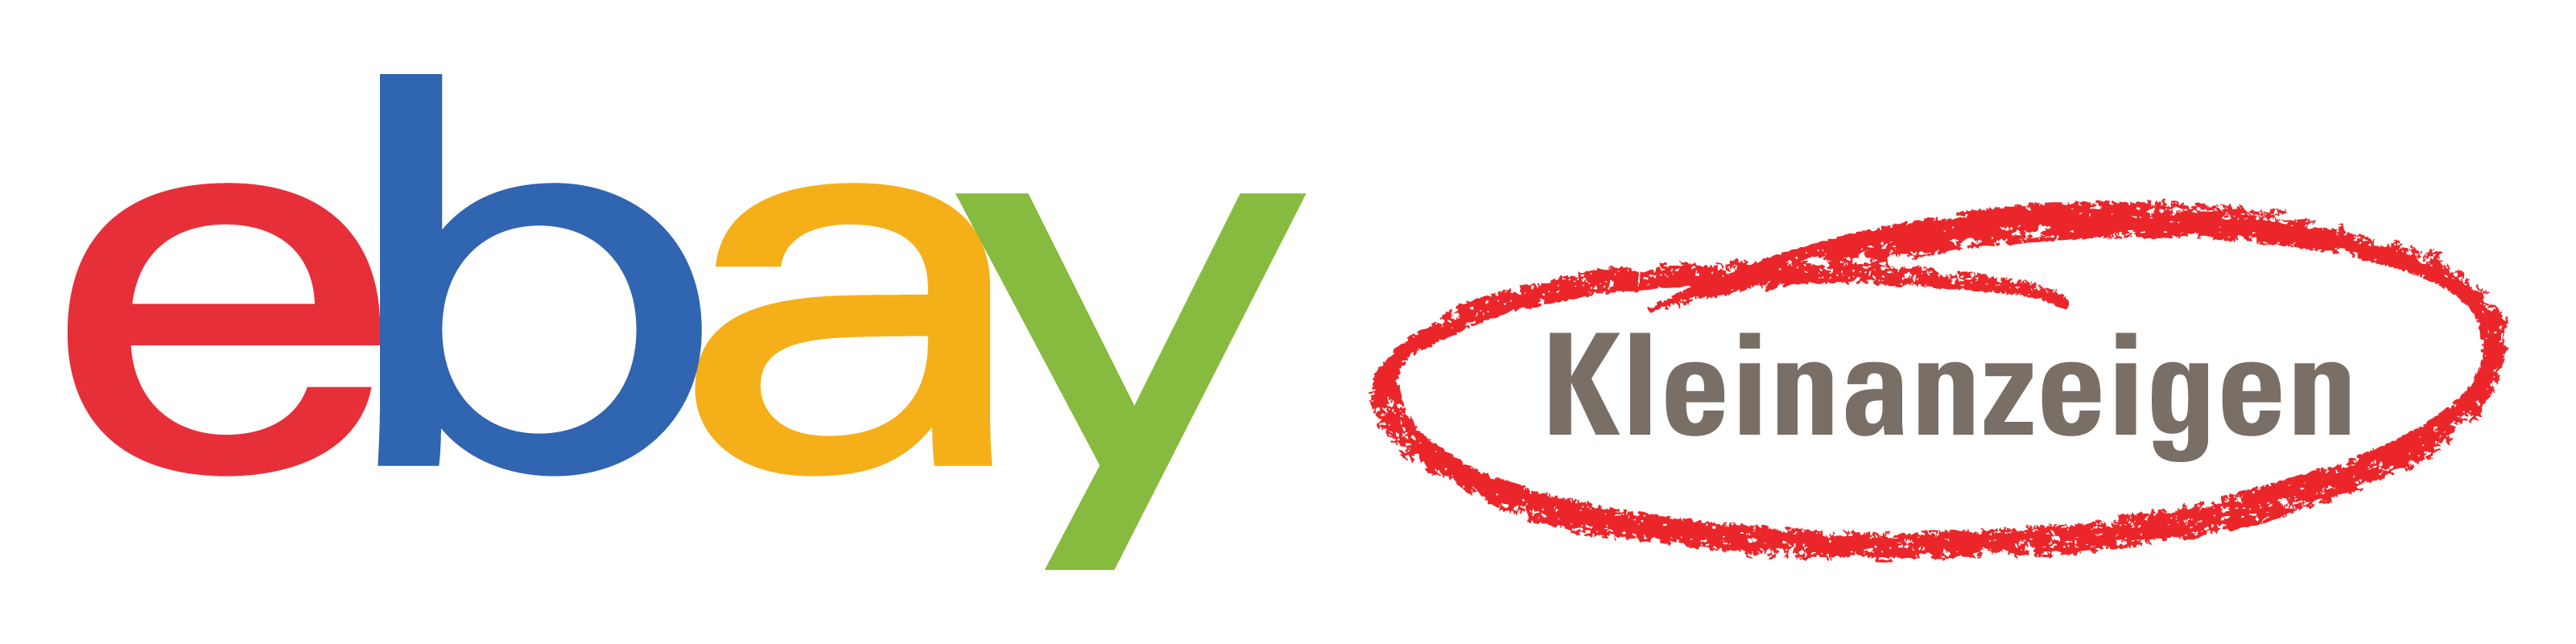 ebay kleinanzeigen logo rgb